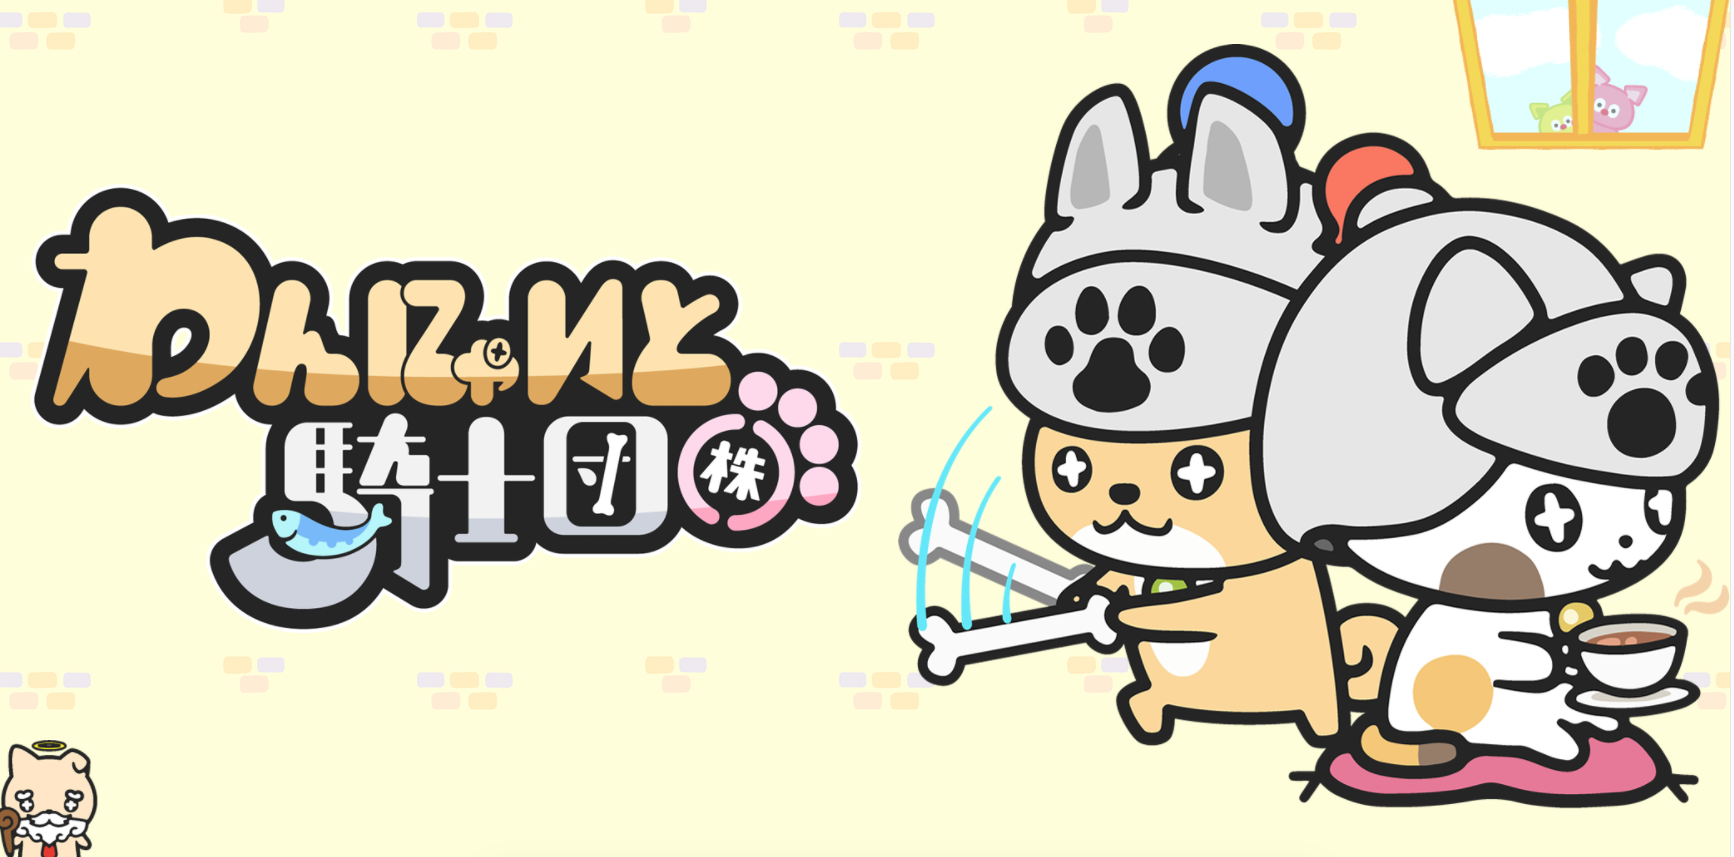 Banner of Chien chat chevalier ! ? Un jeu d'élevage négligé. Wannyato Knights Co., Ltd. Collectionnez des chiens et des chats et obtenez de jolies photos amusantes avec votre appareil photo 1.9.0